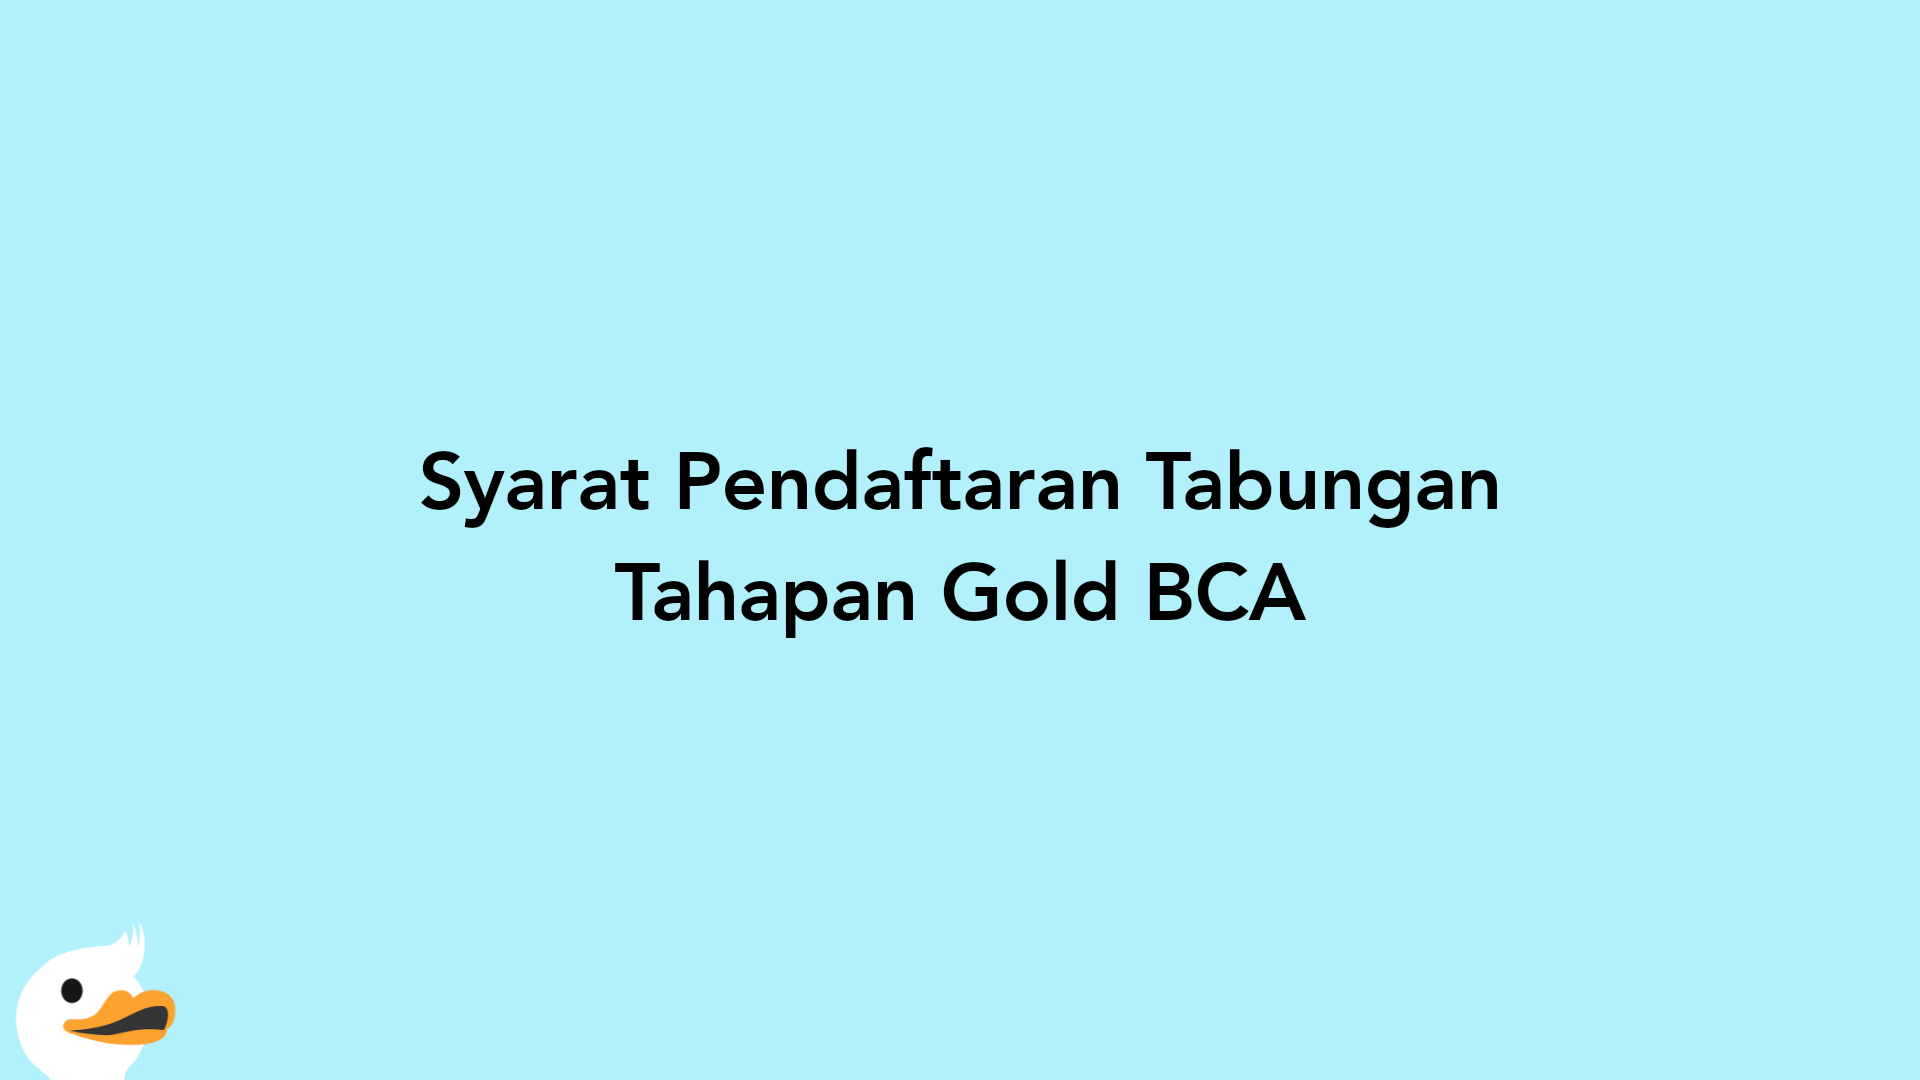 Syarat Pendaftaran Tabungan Tahapan Gold BCA